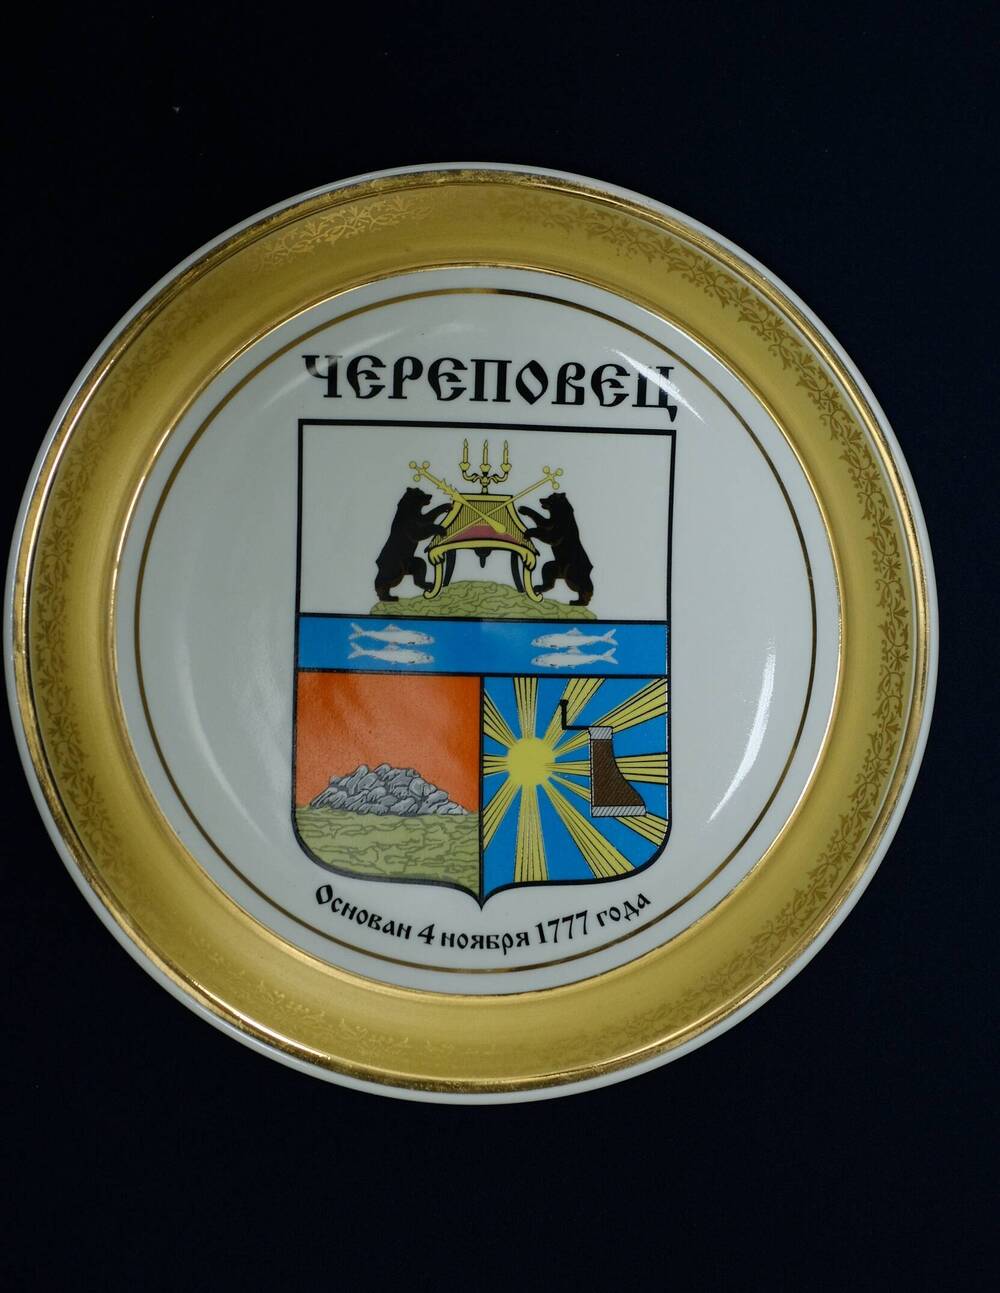 Фарфоровая тарелка Череповецс гербом города и датой основания 04.11.1777г.с позолотой по краю. 